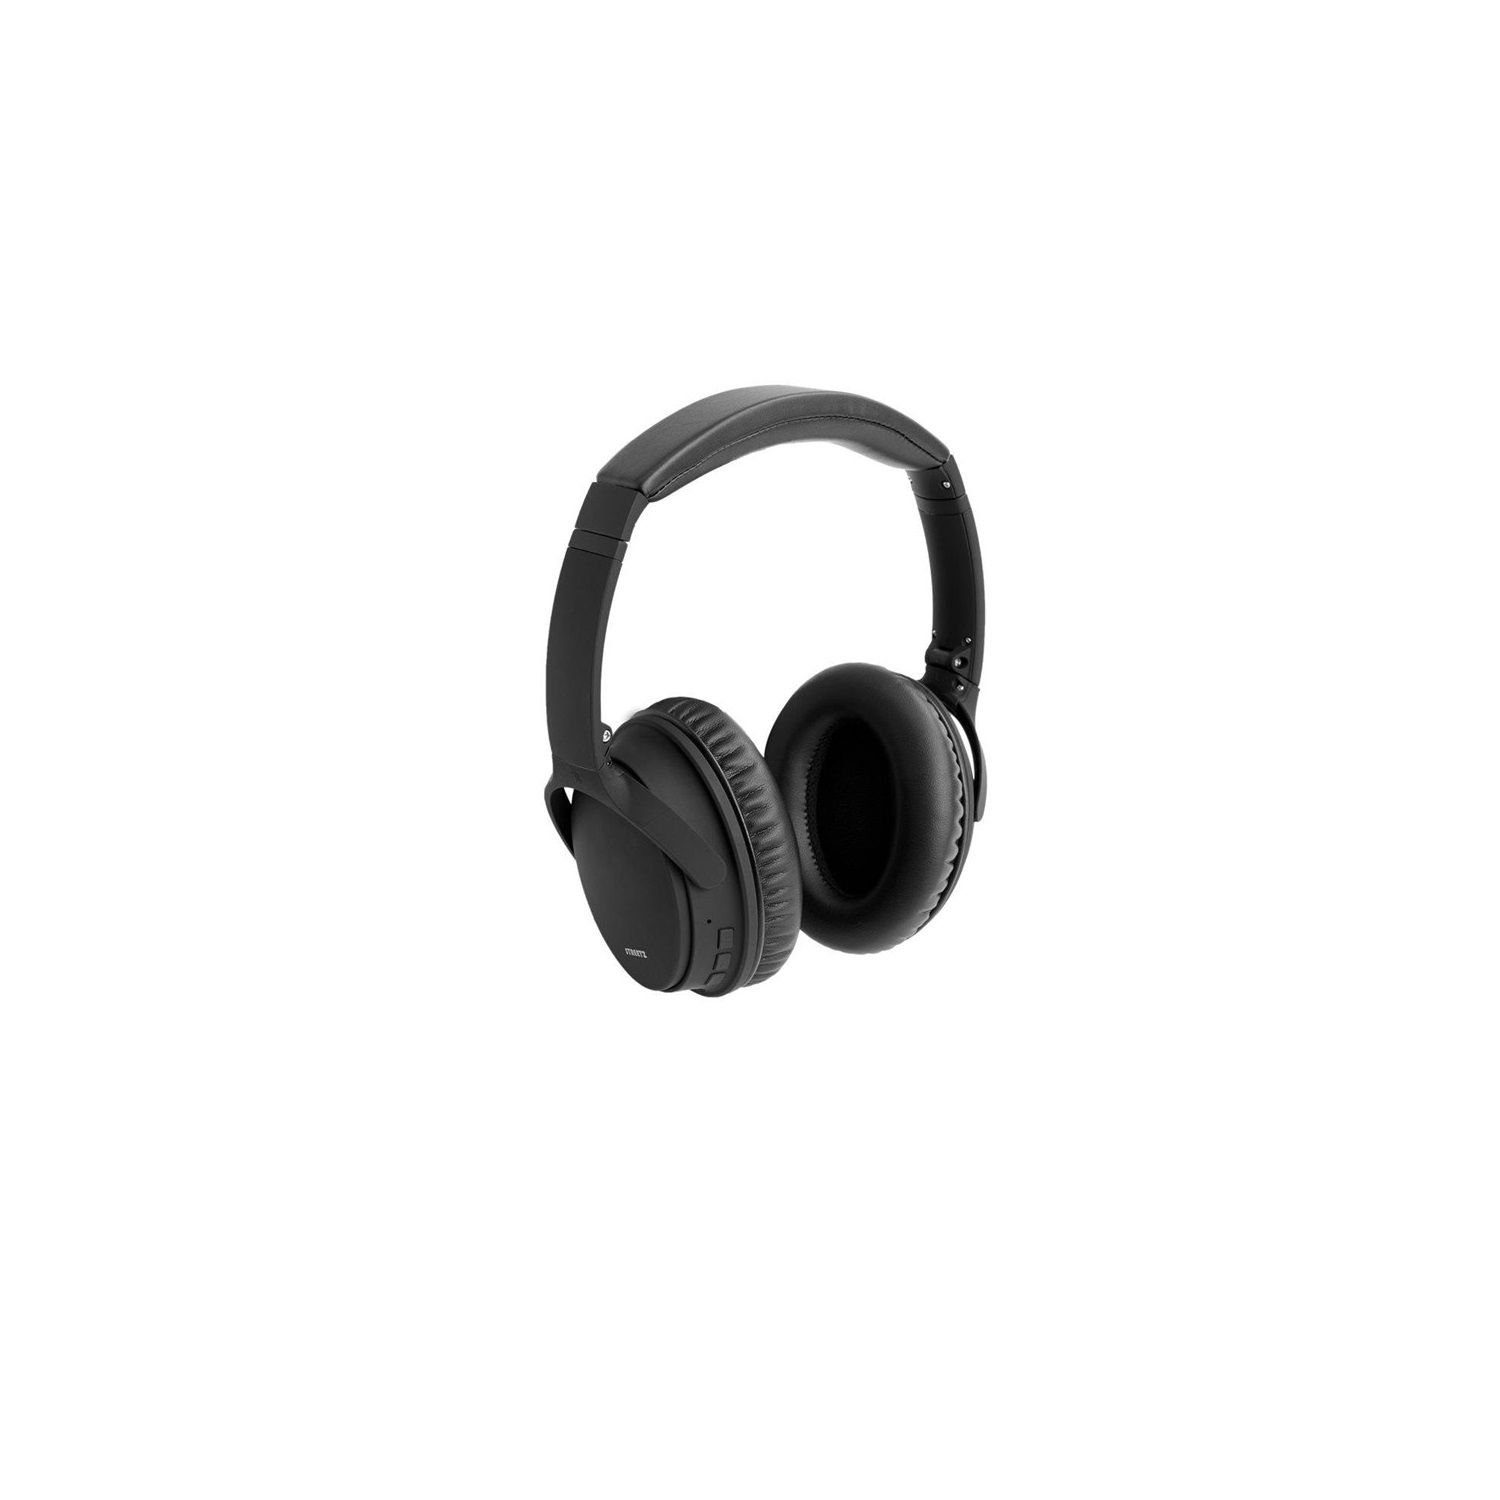 STREETZ Herstellergarantie) Kopfhörer 5 Jahre Mikrofon, inkl. Kopfhörer Bluetooth, mit (integriertes Geräuschunterdrückung aktiver Bluetooth HL-BT404